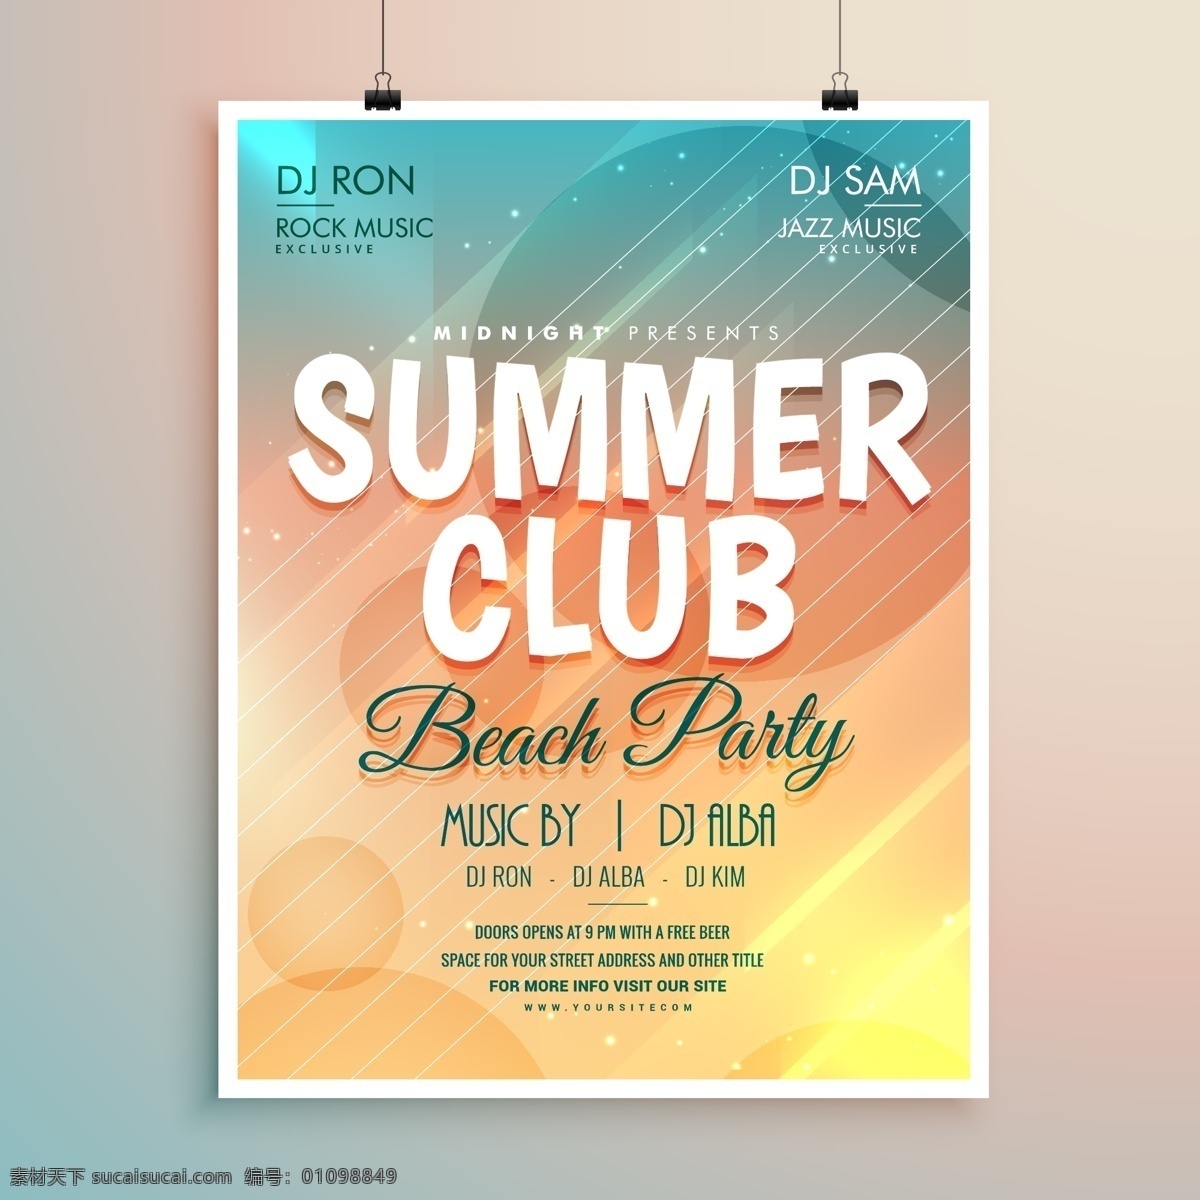 夏季 沙滩派对海报 俱乐部 沙滩 派对 海报